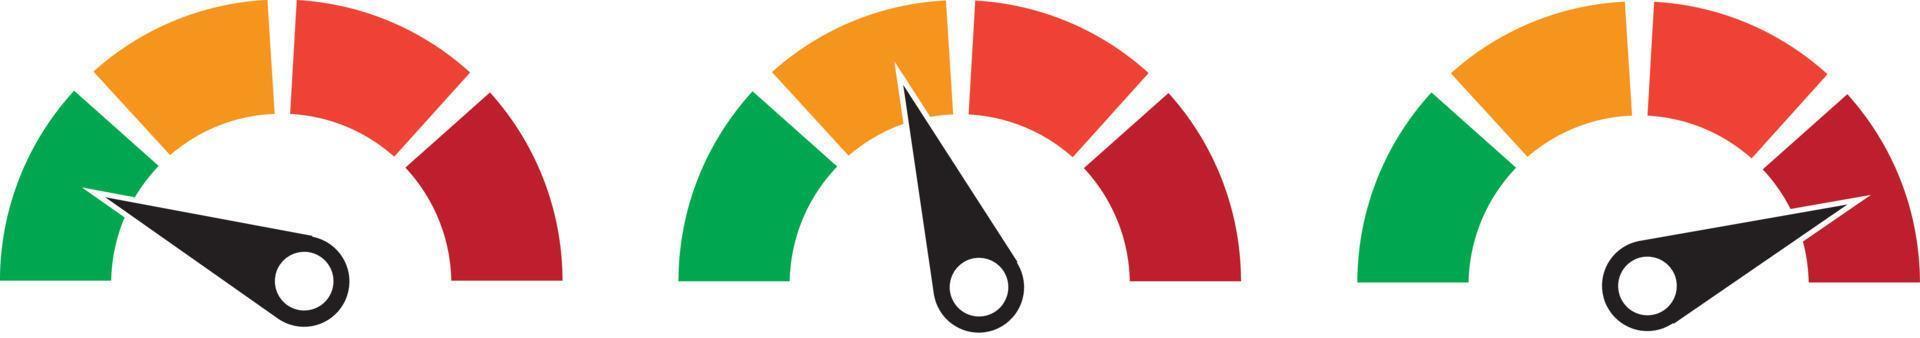 uppsättning färgvektorvarvräknare, flödesmätare med indikator i grön, orange och röd del, hastighetsmätare och prestandamätningsikon, illustration för din webbsida, infografik, appar och broschyr vektor